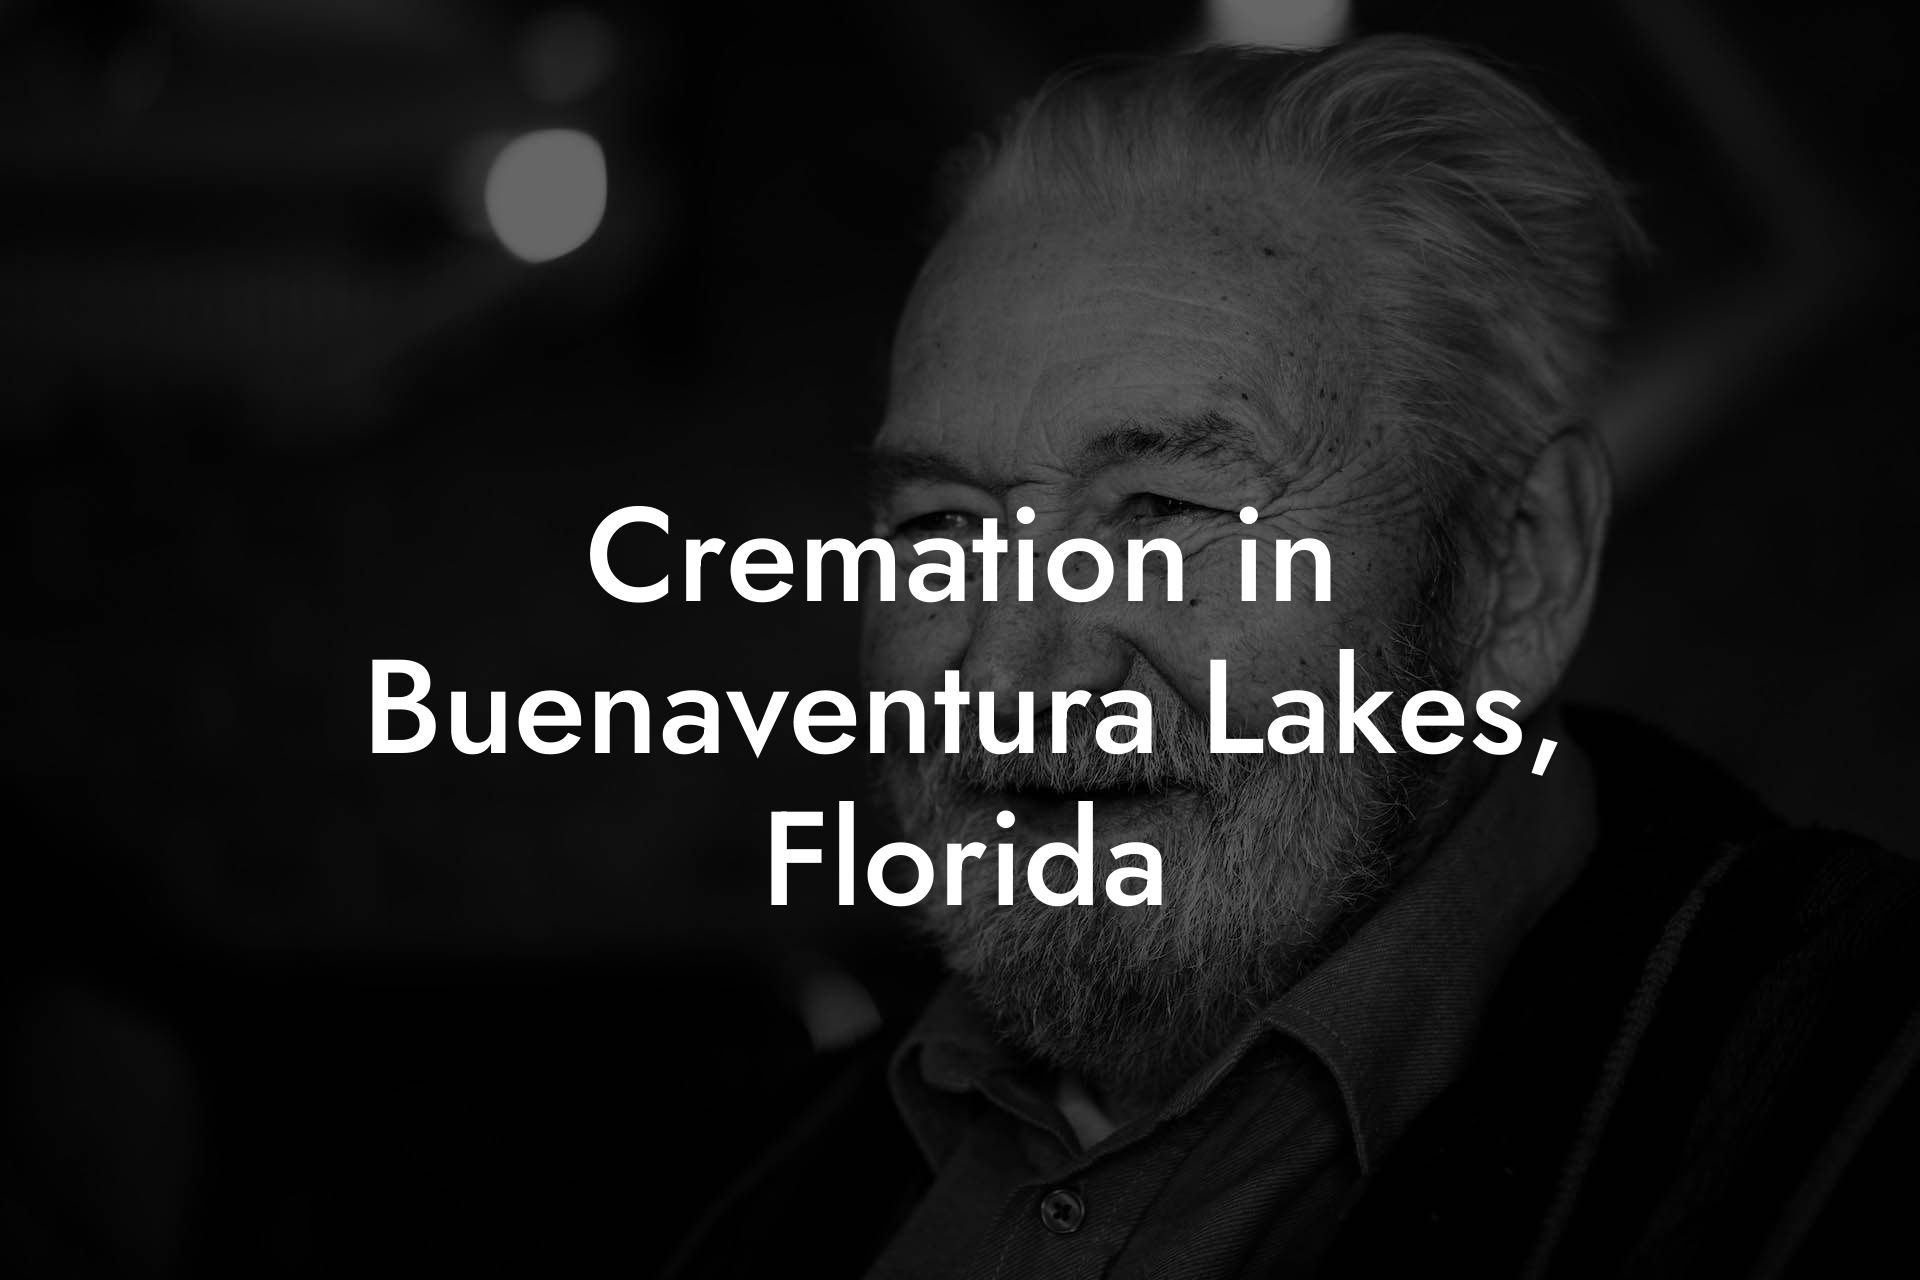 Cremation in Buenaventura Lakes, Florida